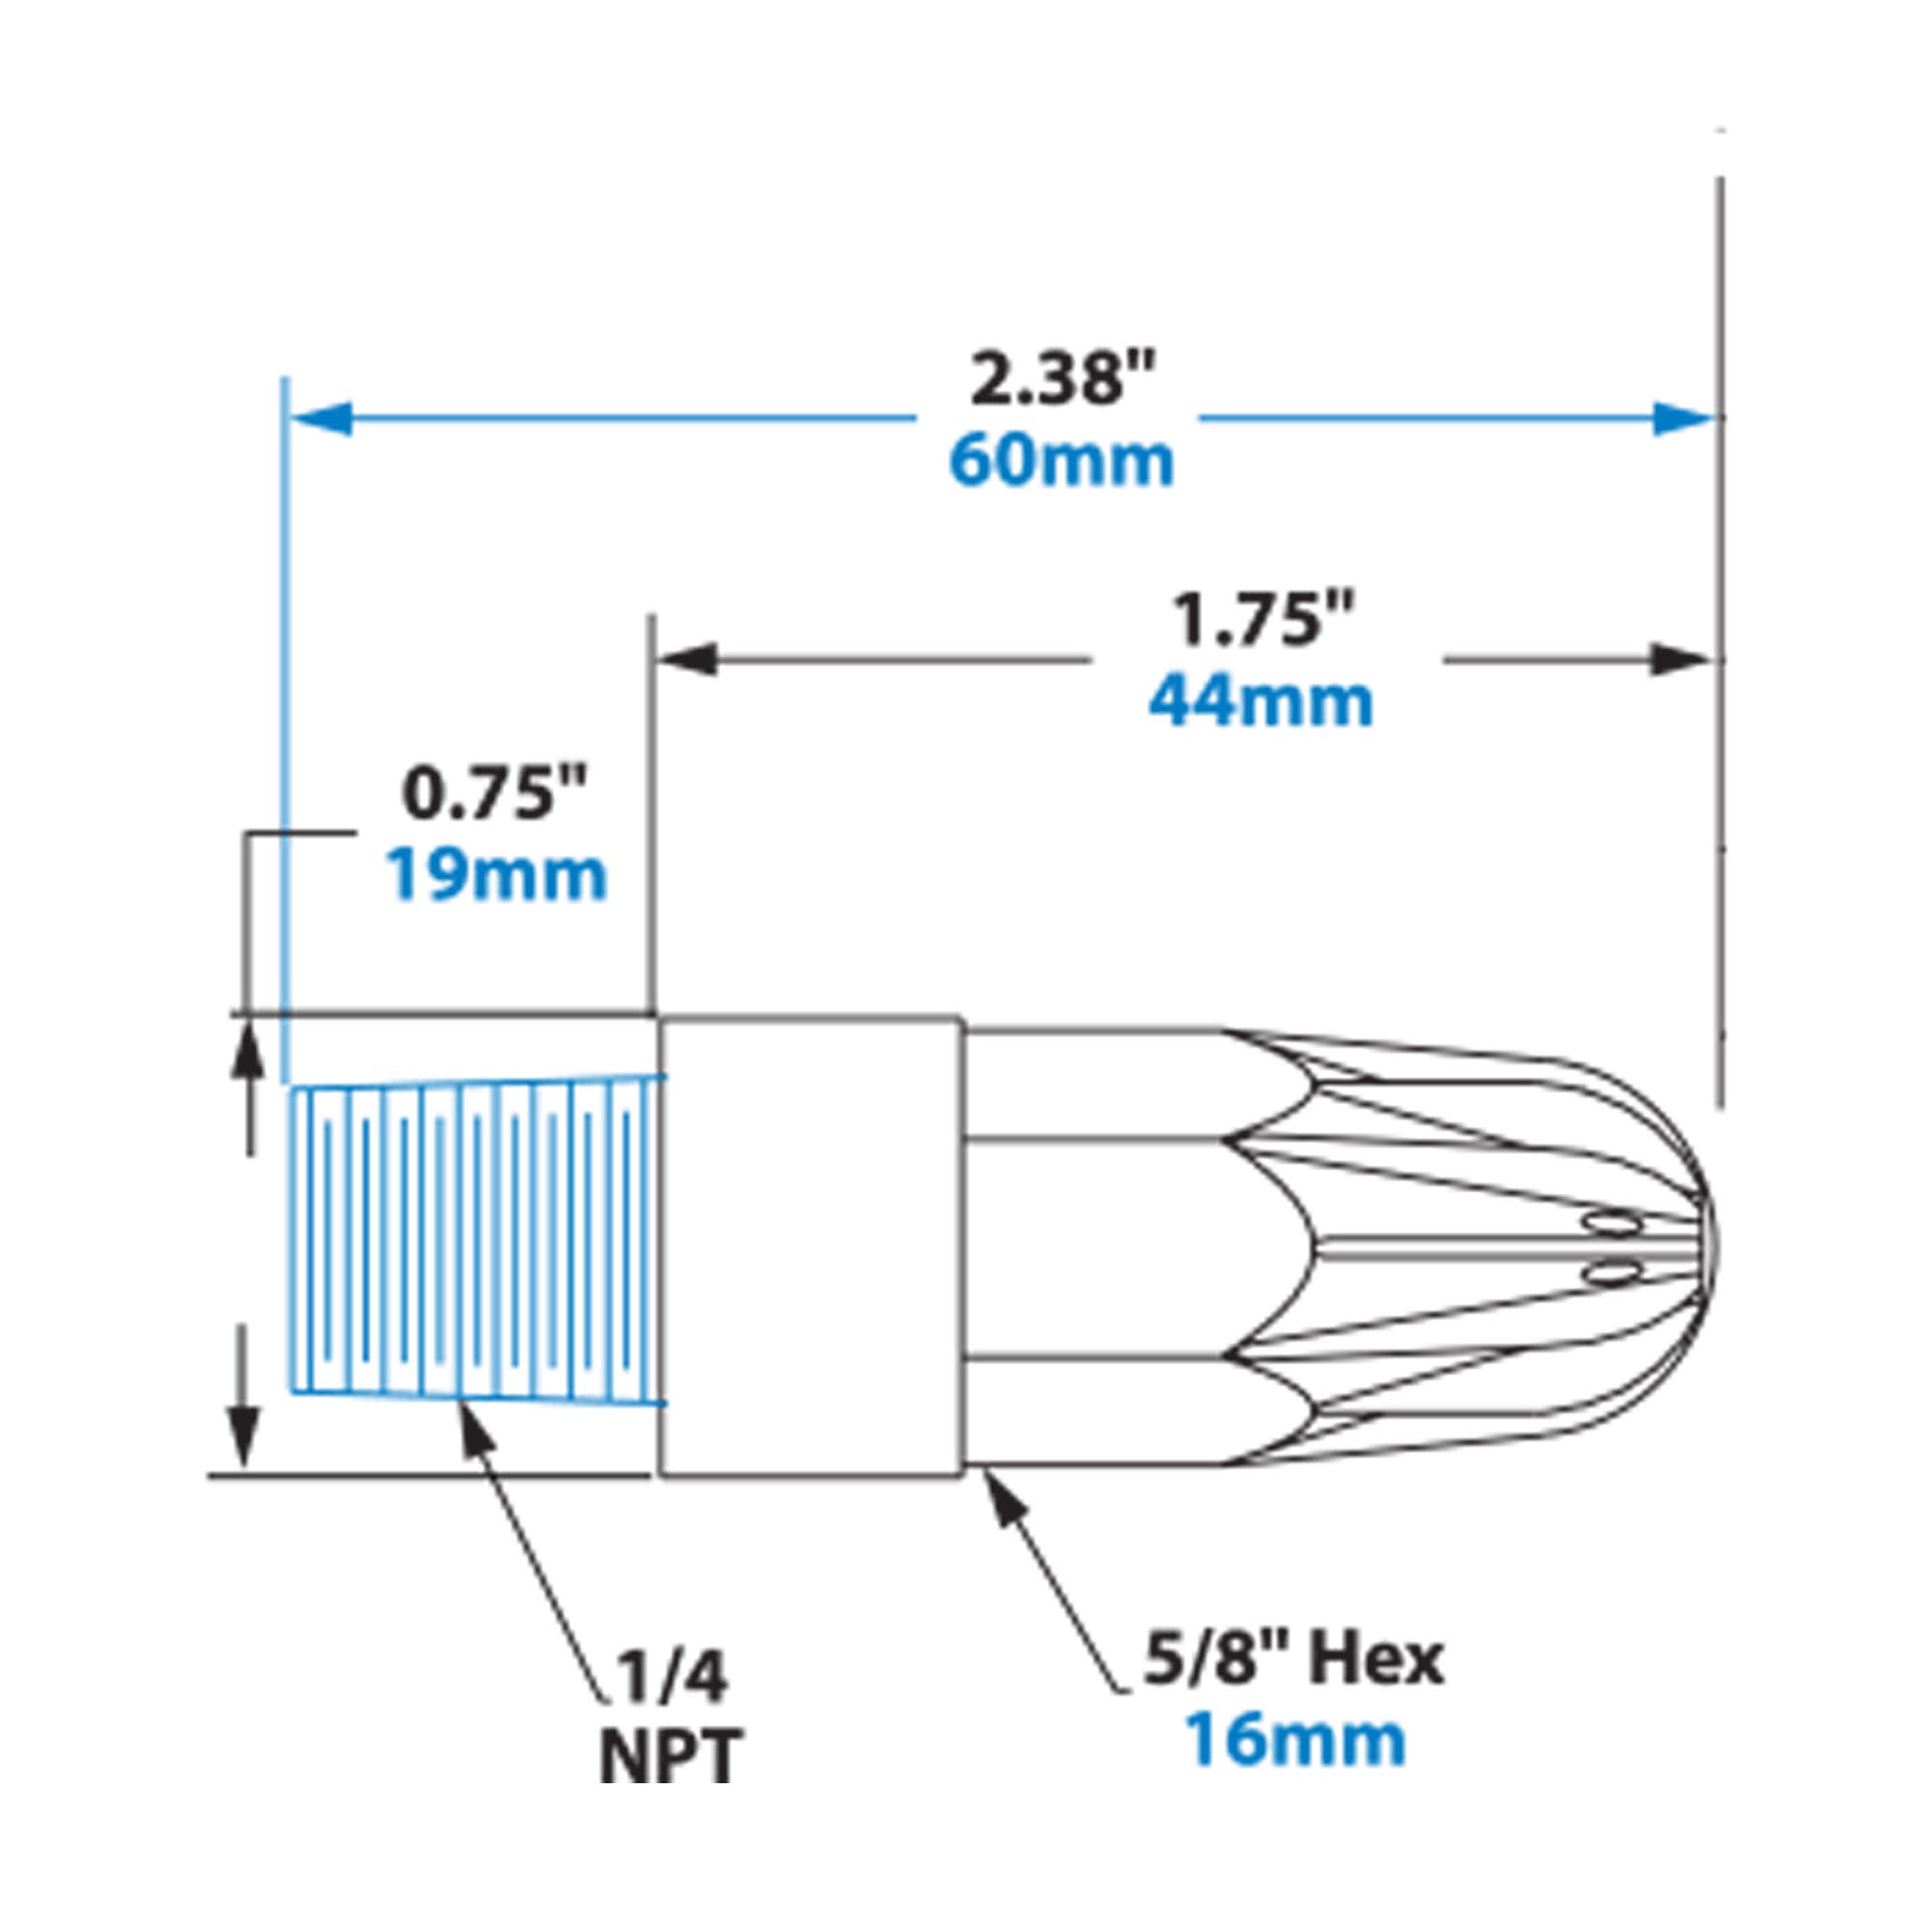 EXAIR Super Air Nozzle Dimensions